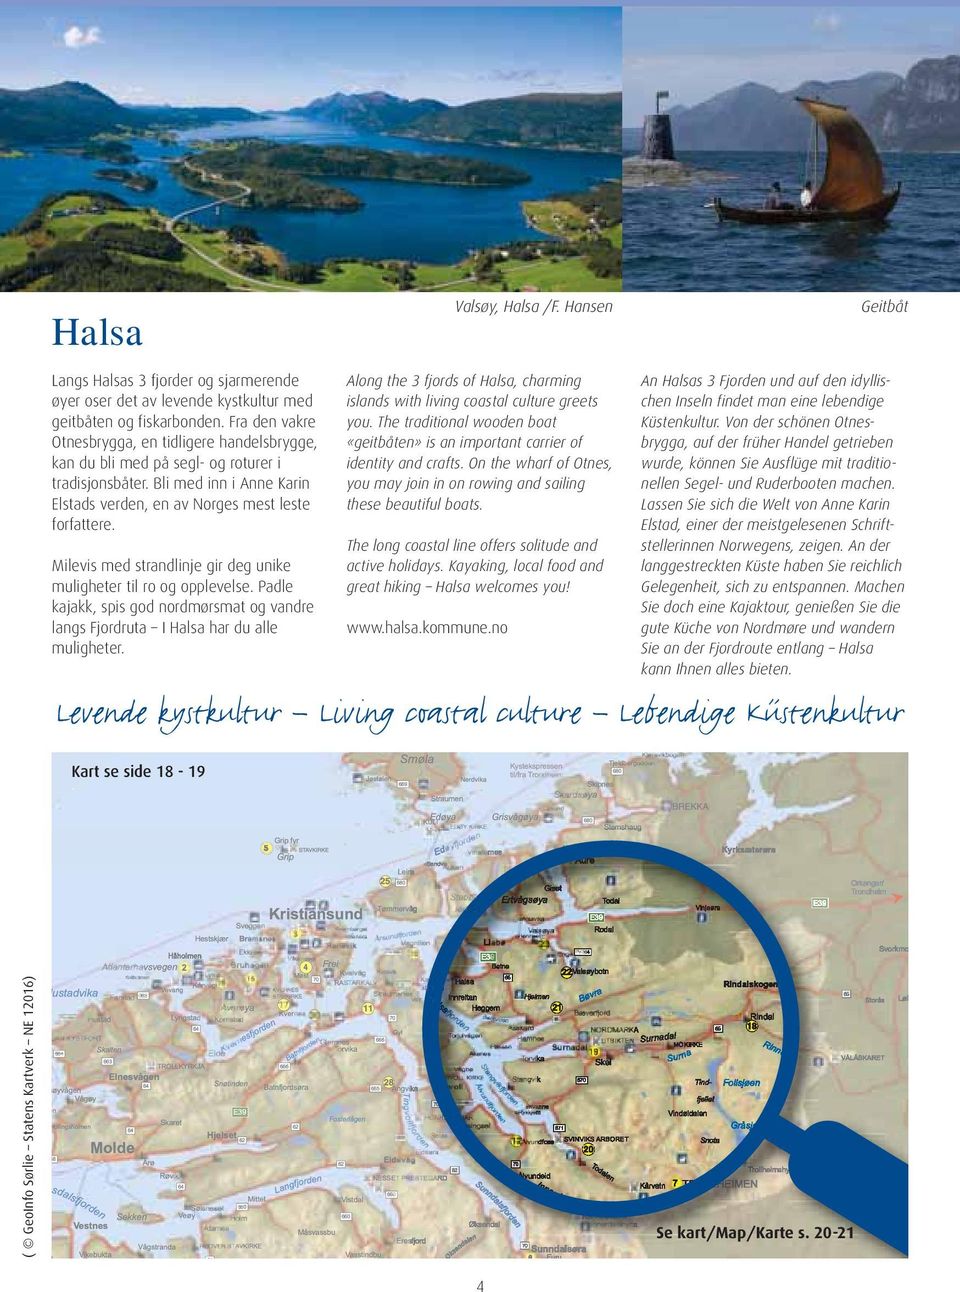 An Halsas 3 Fjorden und auf den idyllischen Inseln findet man eine lebendige Küstenkultur.